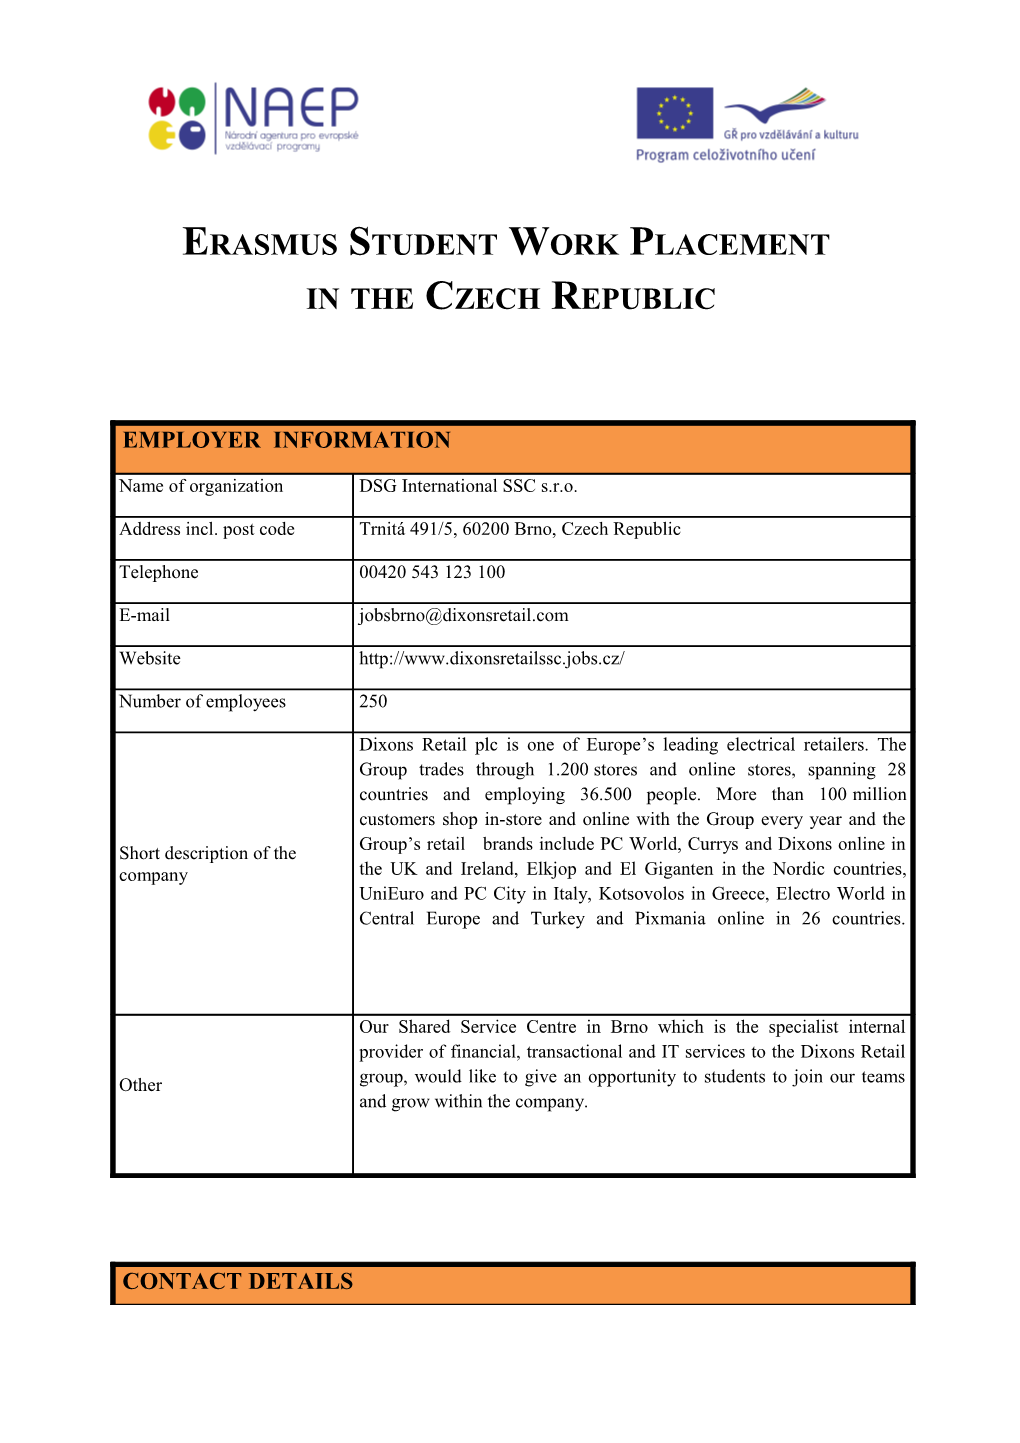 Erasmus Student Work Placement s1